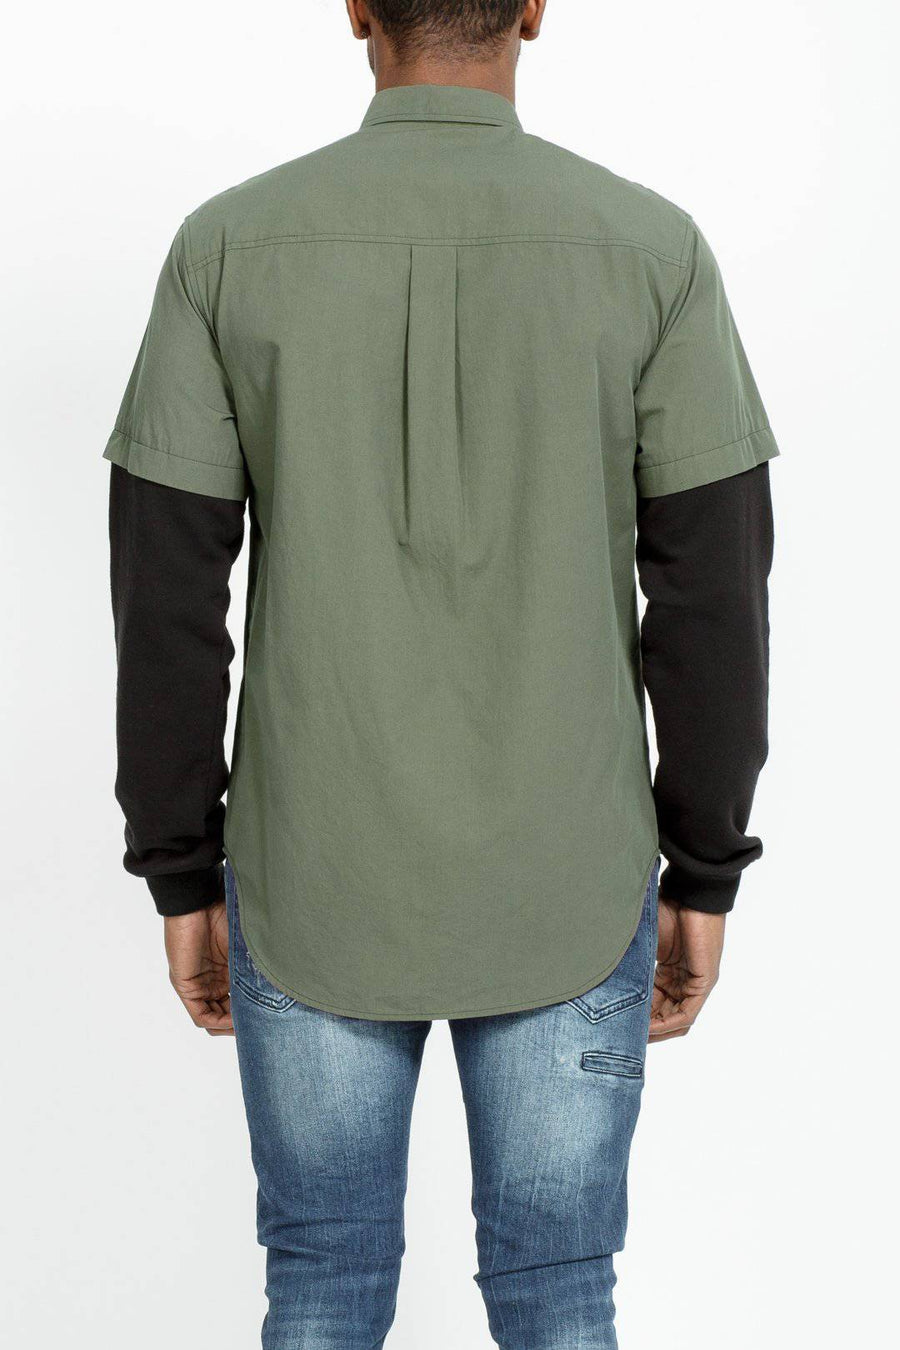 Konus Men's 2 Layer Shirt in Grape Leaf - shopatkonus